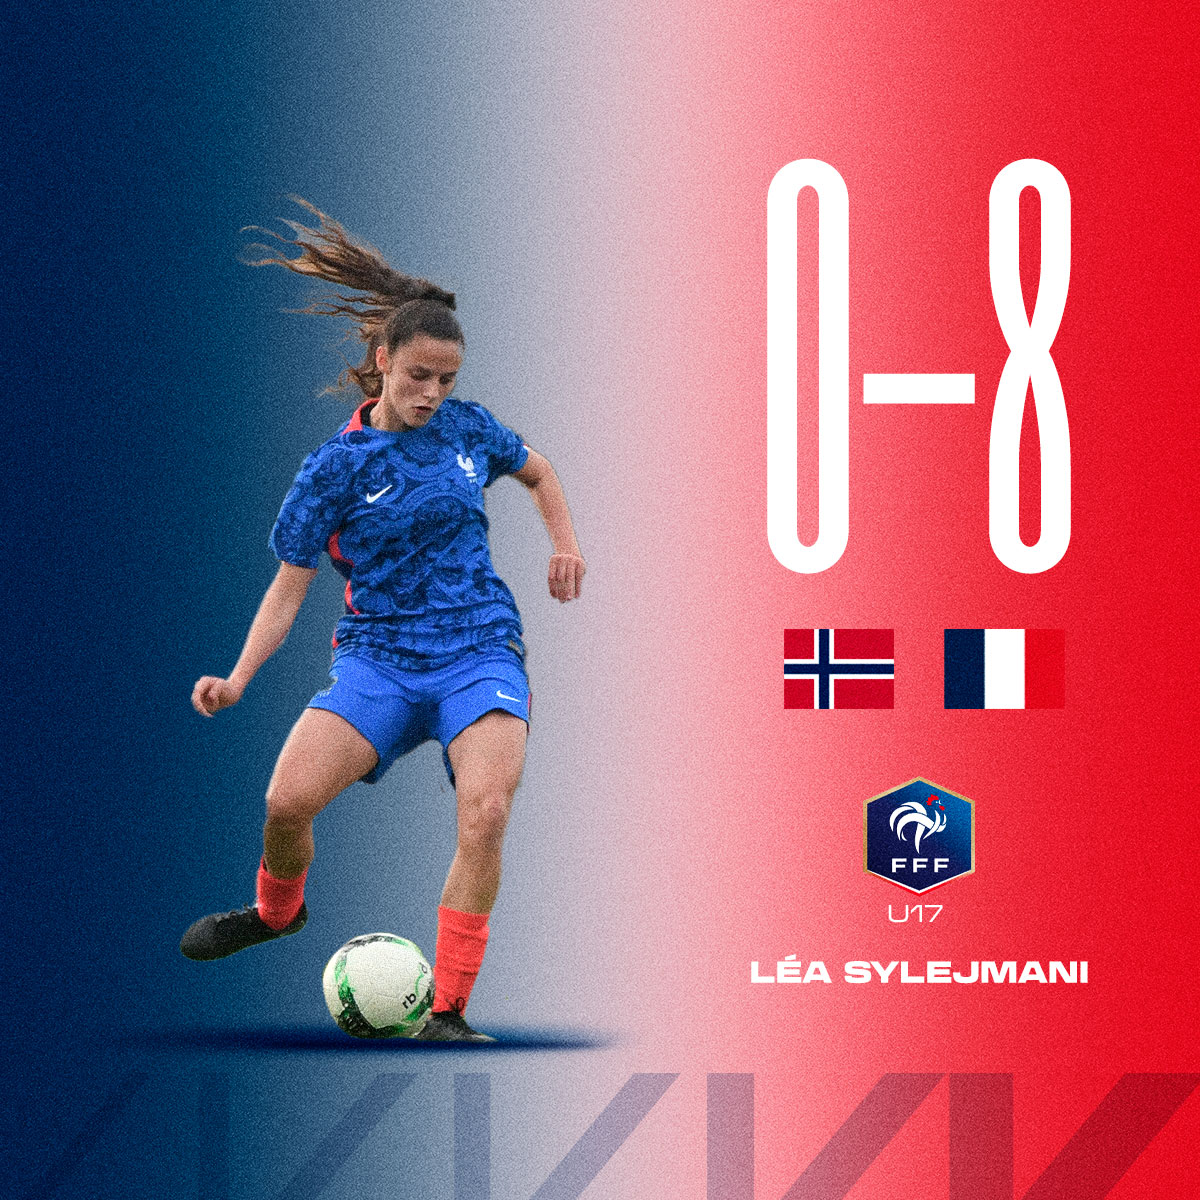 🇫🇷 #SélectionRCSA I 𝐋𝐞́𝐚 𝐒𝐲𝐥𝐞𝐣𝐦𝐚𝐧𝐢 𝐞𝐭 𝐥𝐞𝐬 𝐓𝐫𝐢𝐜𝐨𝐥𝐨𝐫𝐞𝐬 𝐪𝐮𝐚𝐥𝐢𝐟𝐢𝐞́𝐞𝐬 𝐩𝐨𝐮𝐫 𝐥𝐞𝐬 𝐝𝐞𝐦𝐢𝐞𝐬 ! ✅ Norvège 0-8 @equipedefranceF U17 🏆 Match 2 - @WEURO U17 ⏱️ Entrée en jeu à la 78e minute, Léa Sylejmani est impliquée sur le dernier but des…